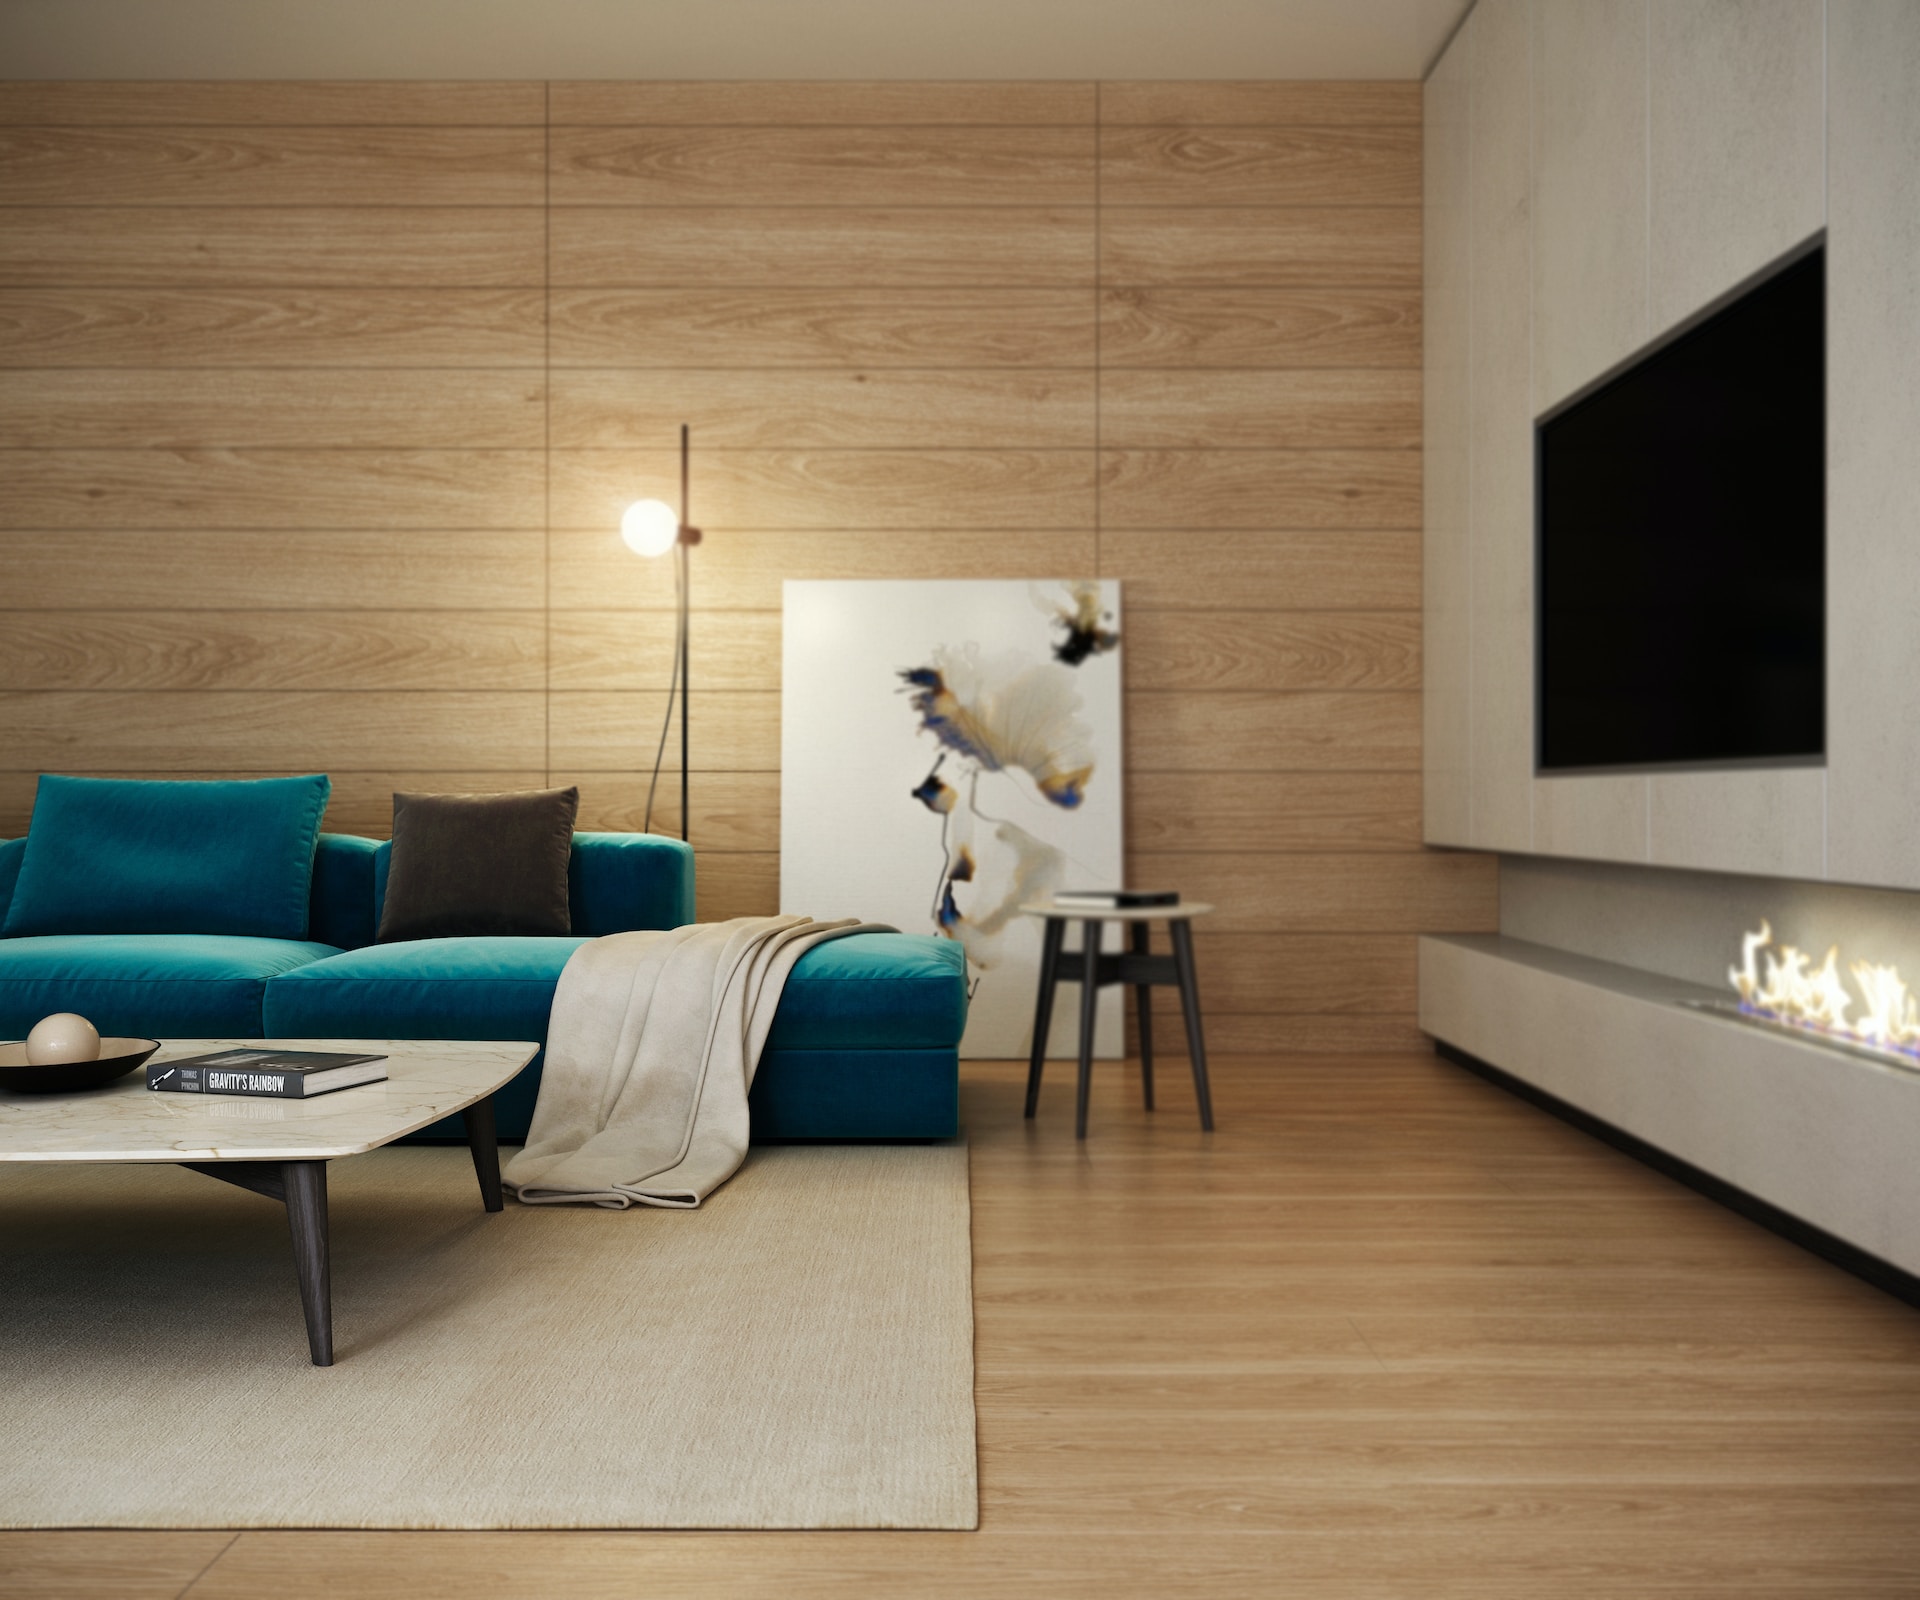 Foto de uma sala moderna, com sofá, um quadro, lampada, lareira e uma TV